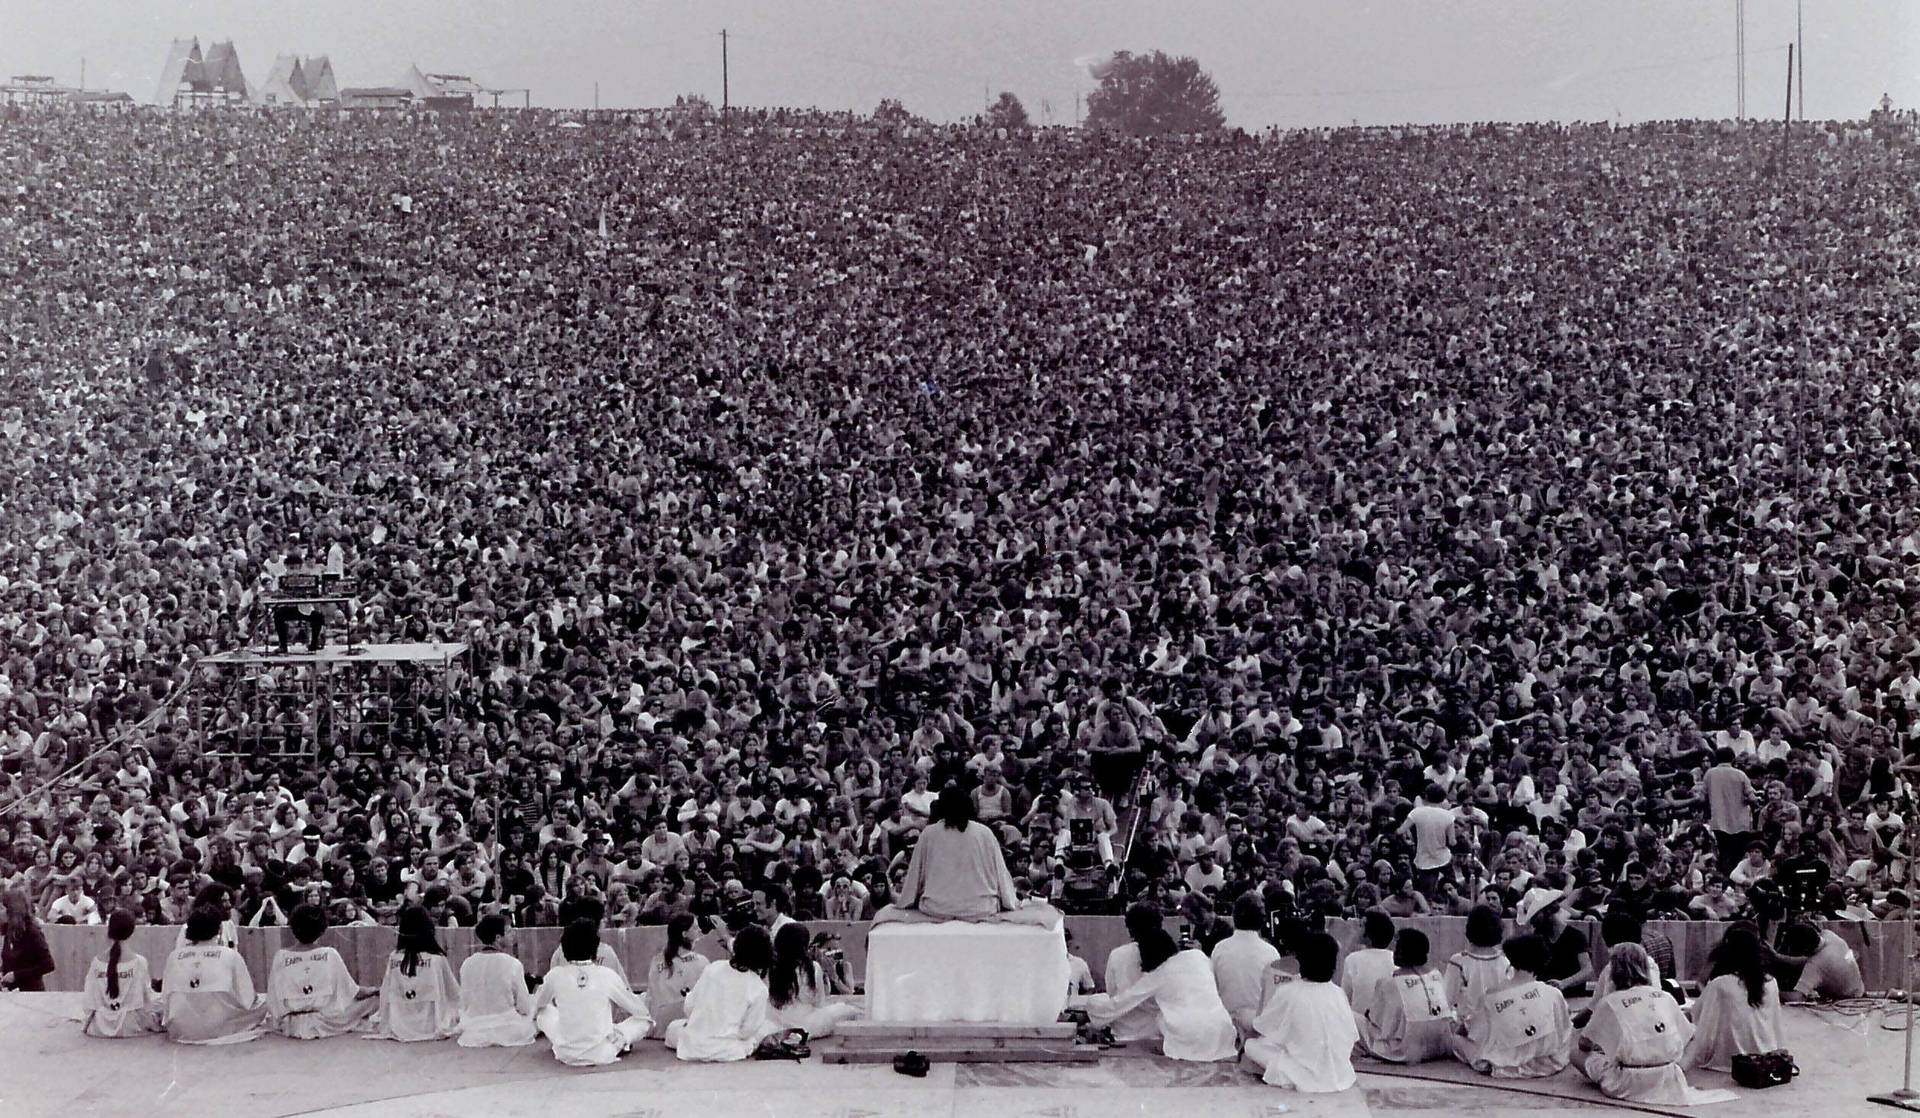 Woodstocksvartvitt Folkmassa. Wallpaper